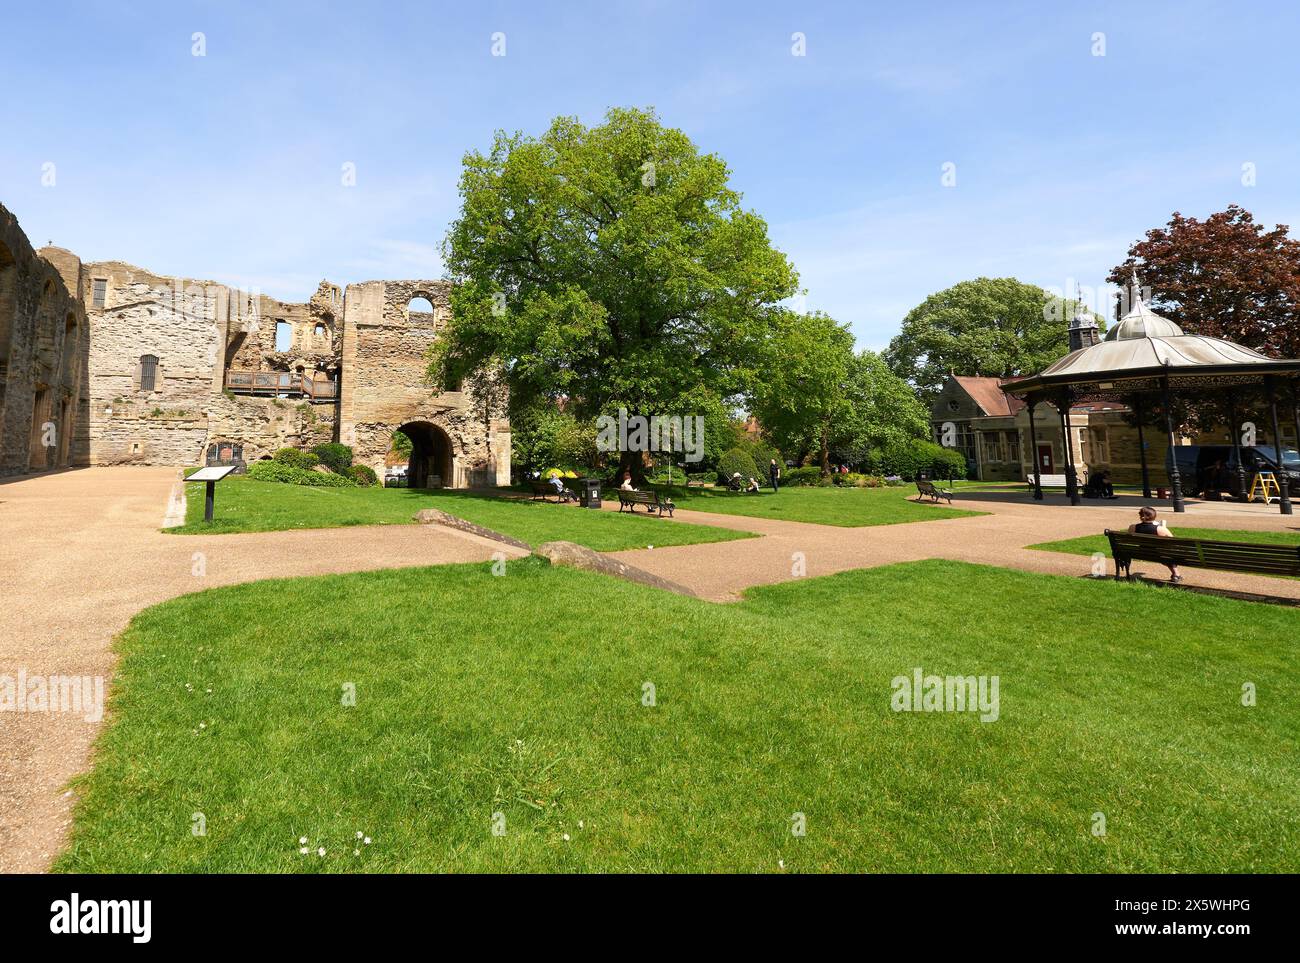 Menschen, die sich auf dem Gelände von Newark Castle, Nottinghamshire, Großbritannien, entspannen Stockfoto